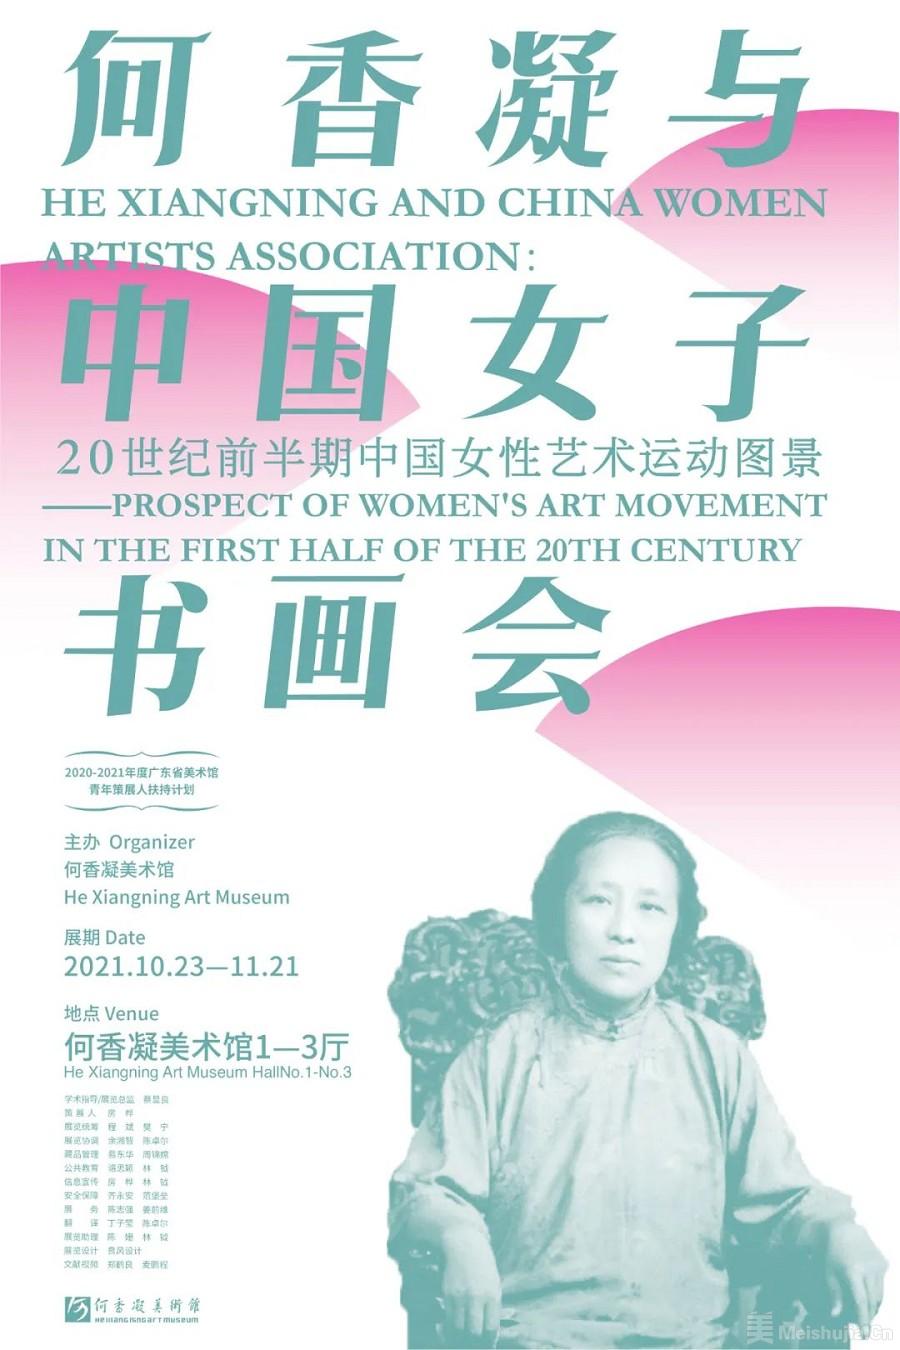 何香凝与中国女子书画会：20世纪前半期中国女性艺术运动图景